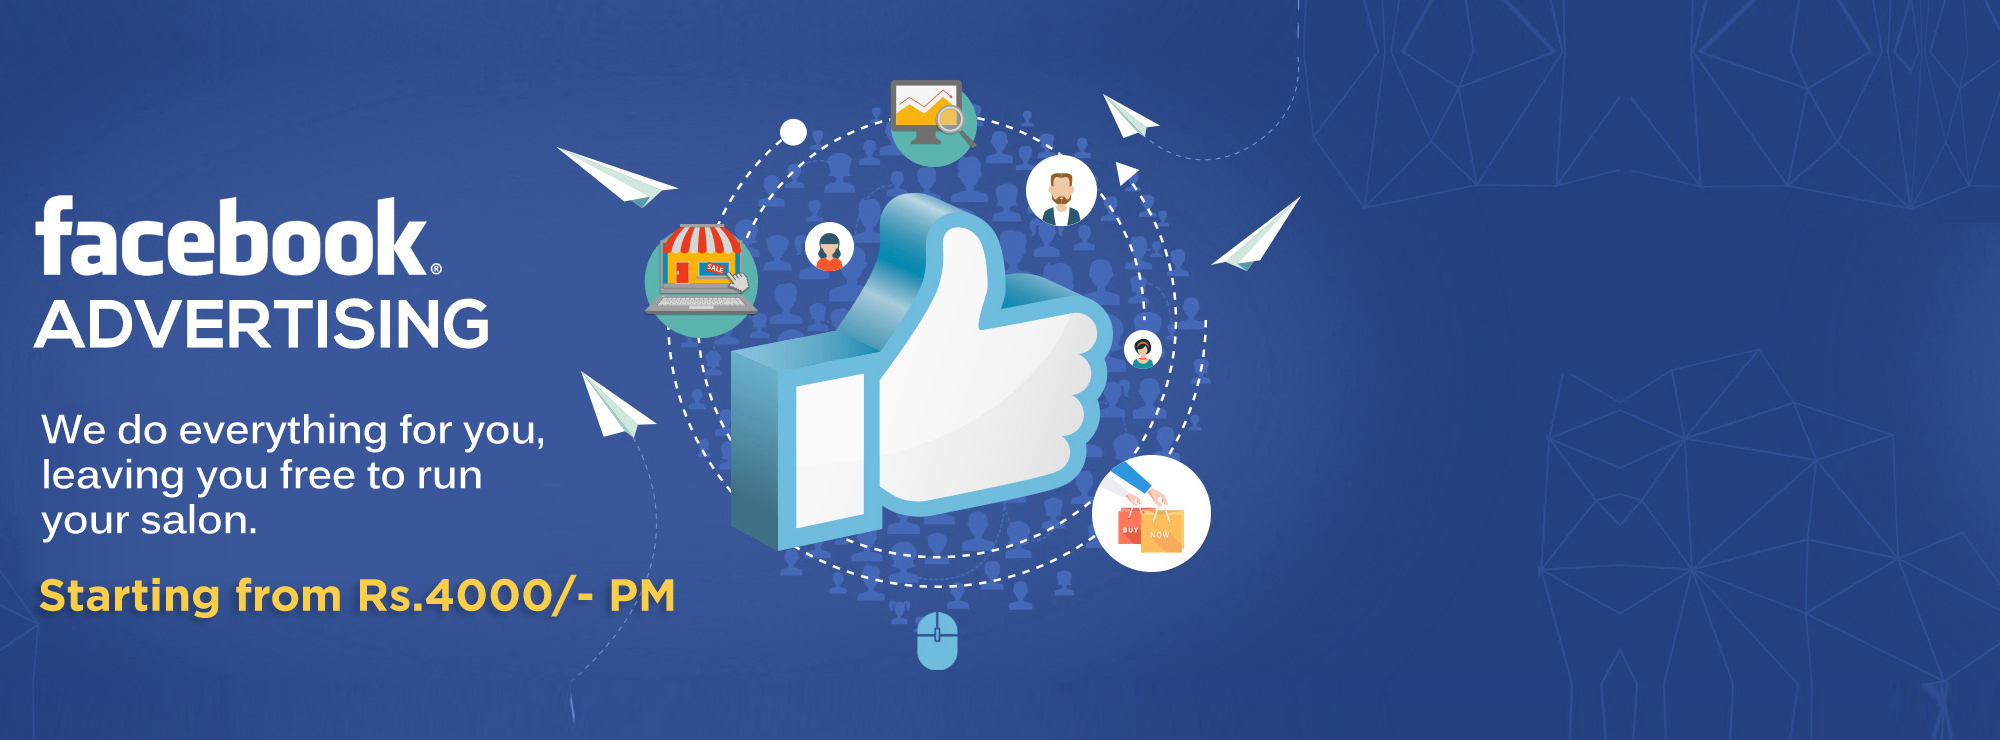 Social Media Marketing Companies Mumbai